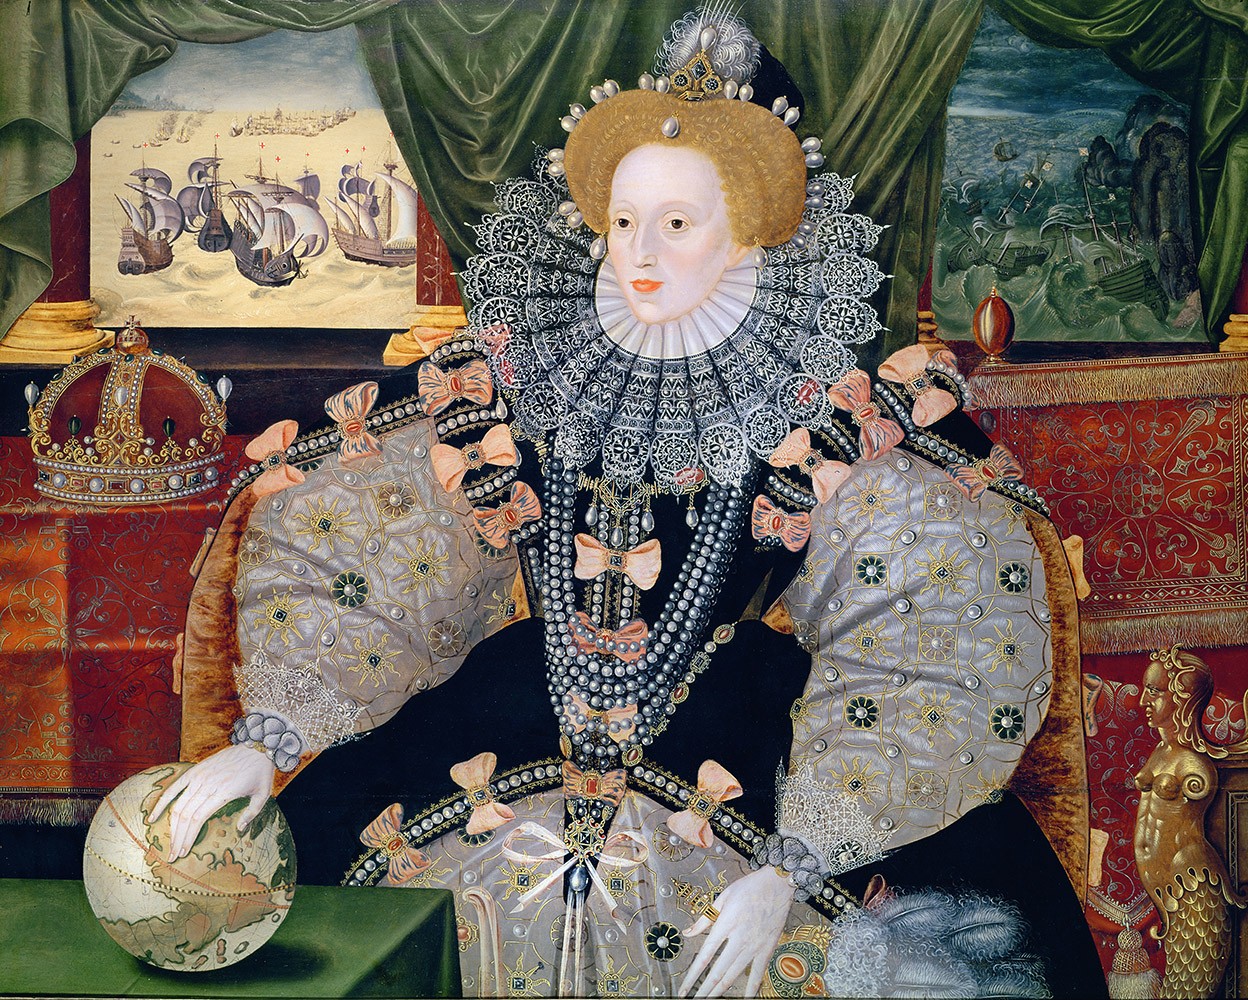 דיוקנה של המלכה אליזבת' הראשונה לרגל הניצחון האנגלי על הארמדה הספרדית, הציור מיוחס לג'ורג' גואוור (Gower) מקור ויקיפדיה באנגלית.